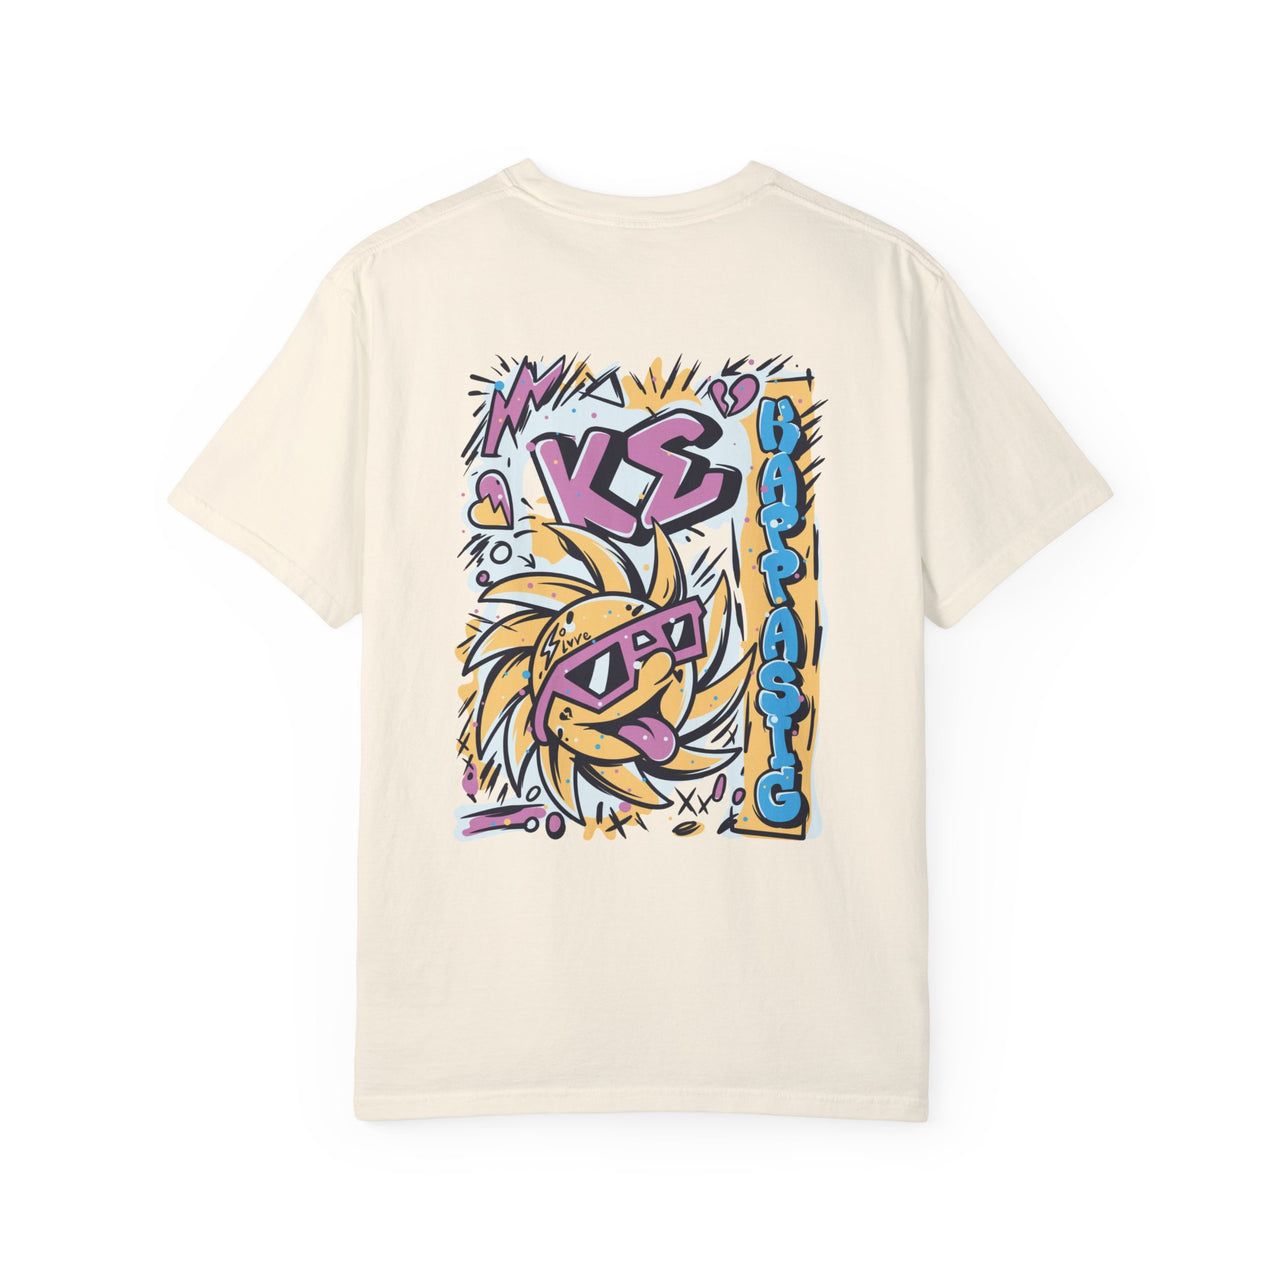 Kappa Sigma Graphic T-Shirt | Fun in the Sun